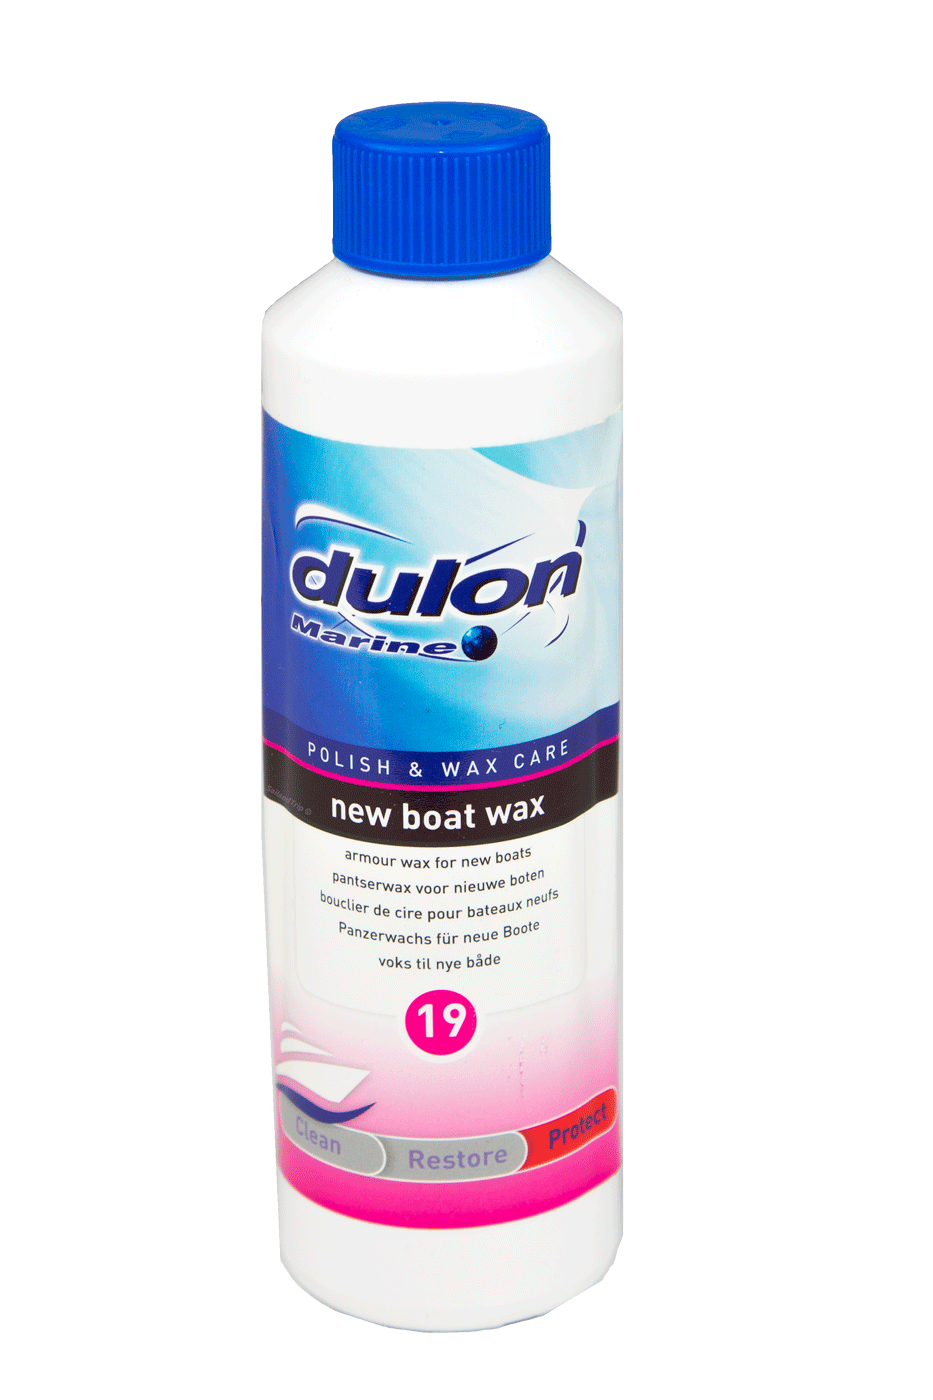 Premium boat wax Dulon marine